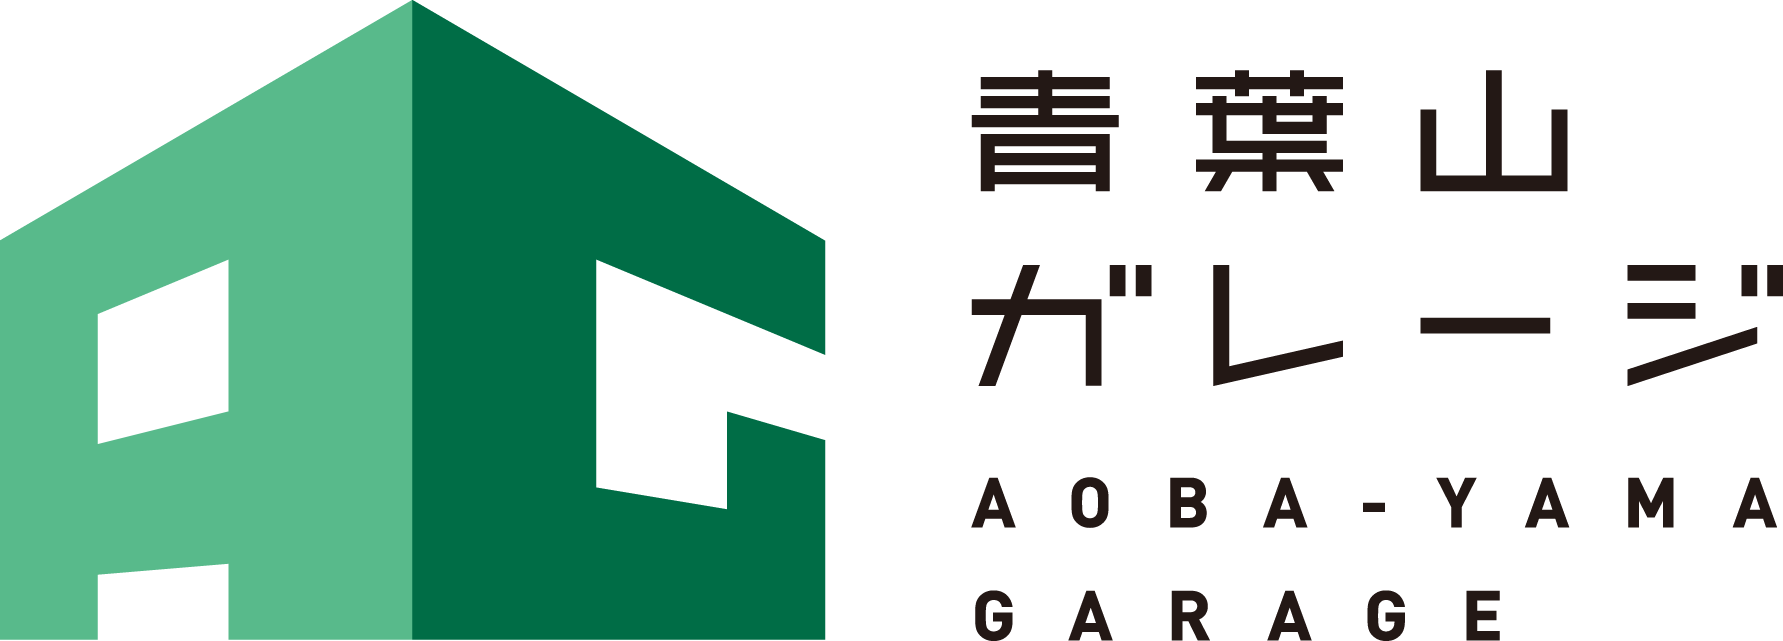 青葉山ガレージのロゴ